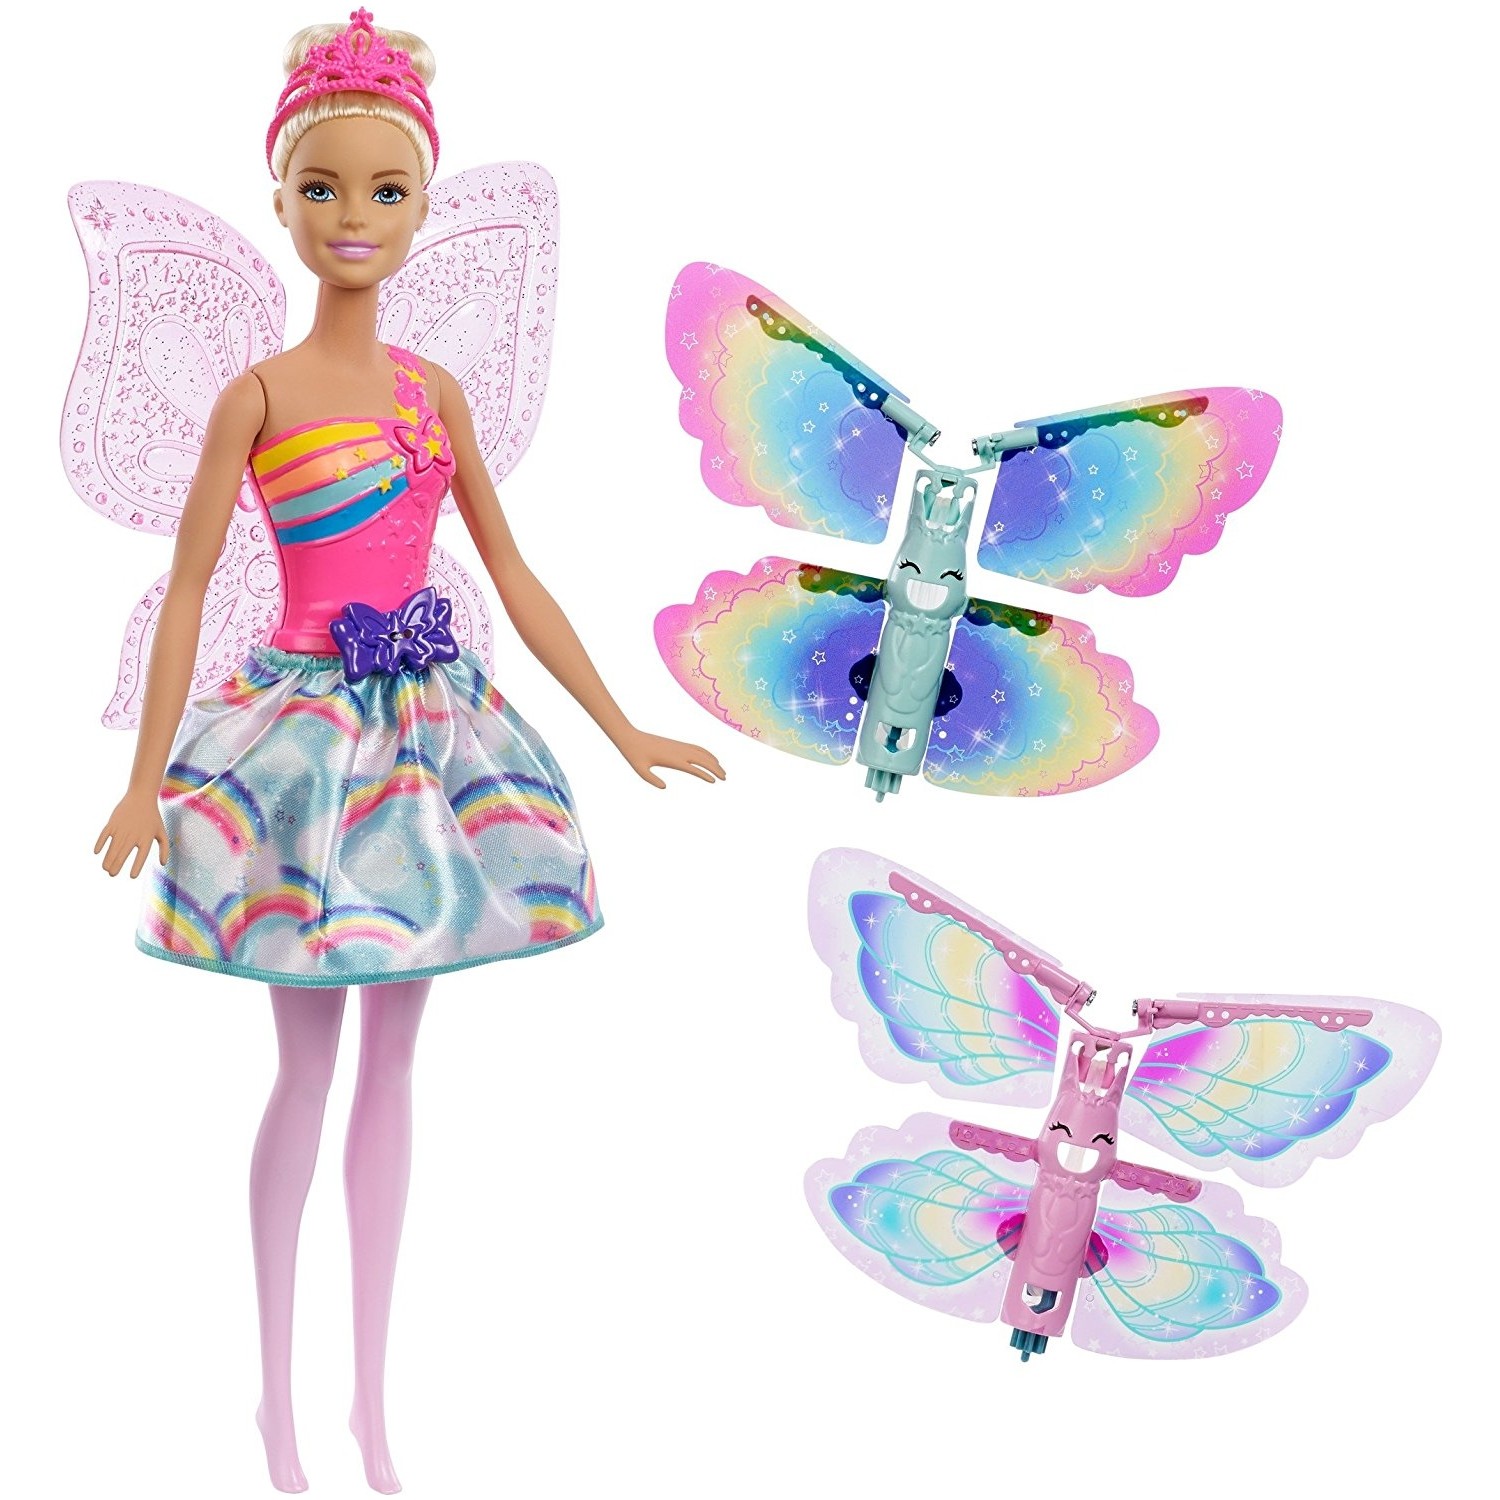 Кукла Barbie Dreamtopia Winged Fairy FRB08 кукла barbie dreamtopia mermaid fjc89